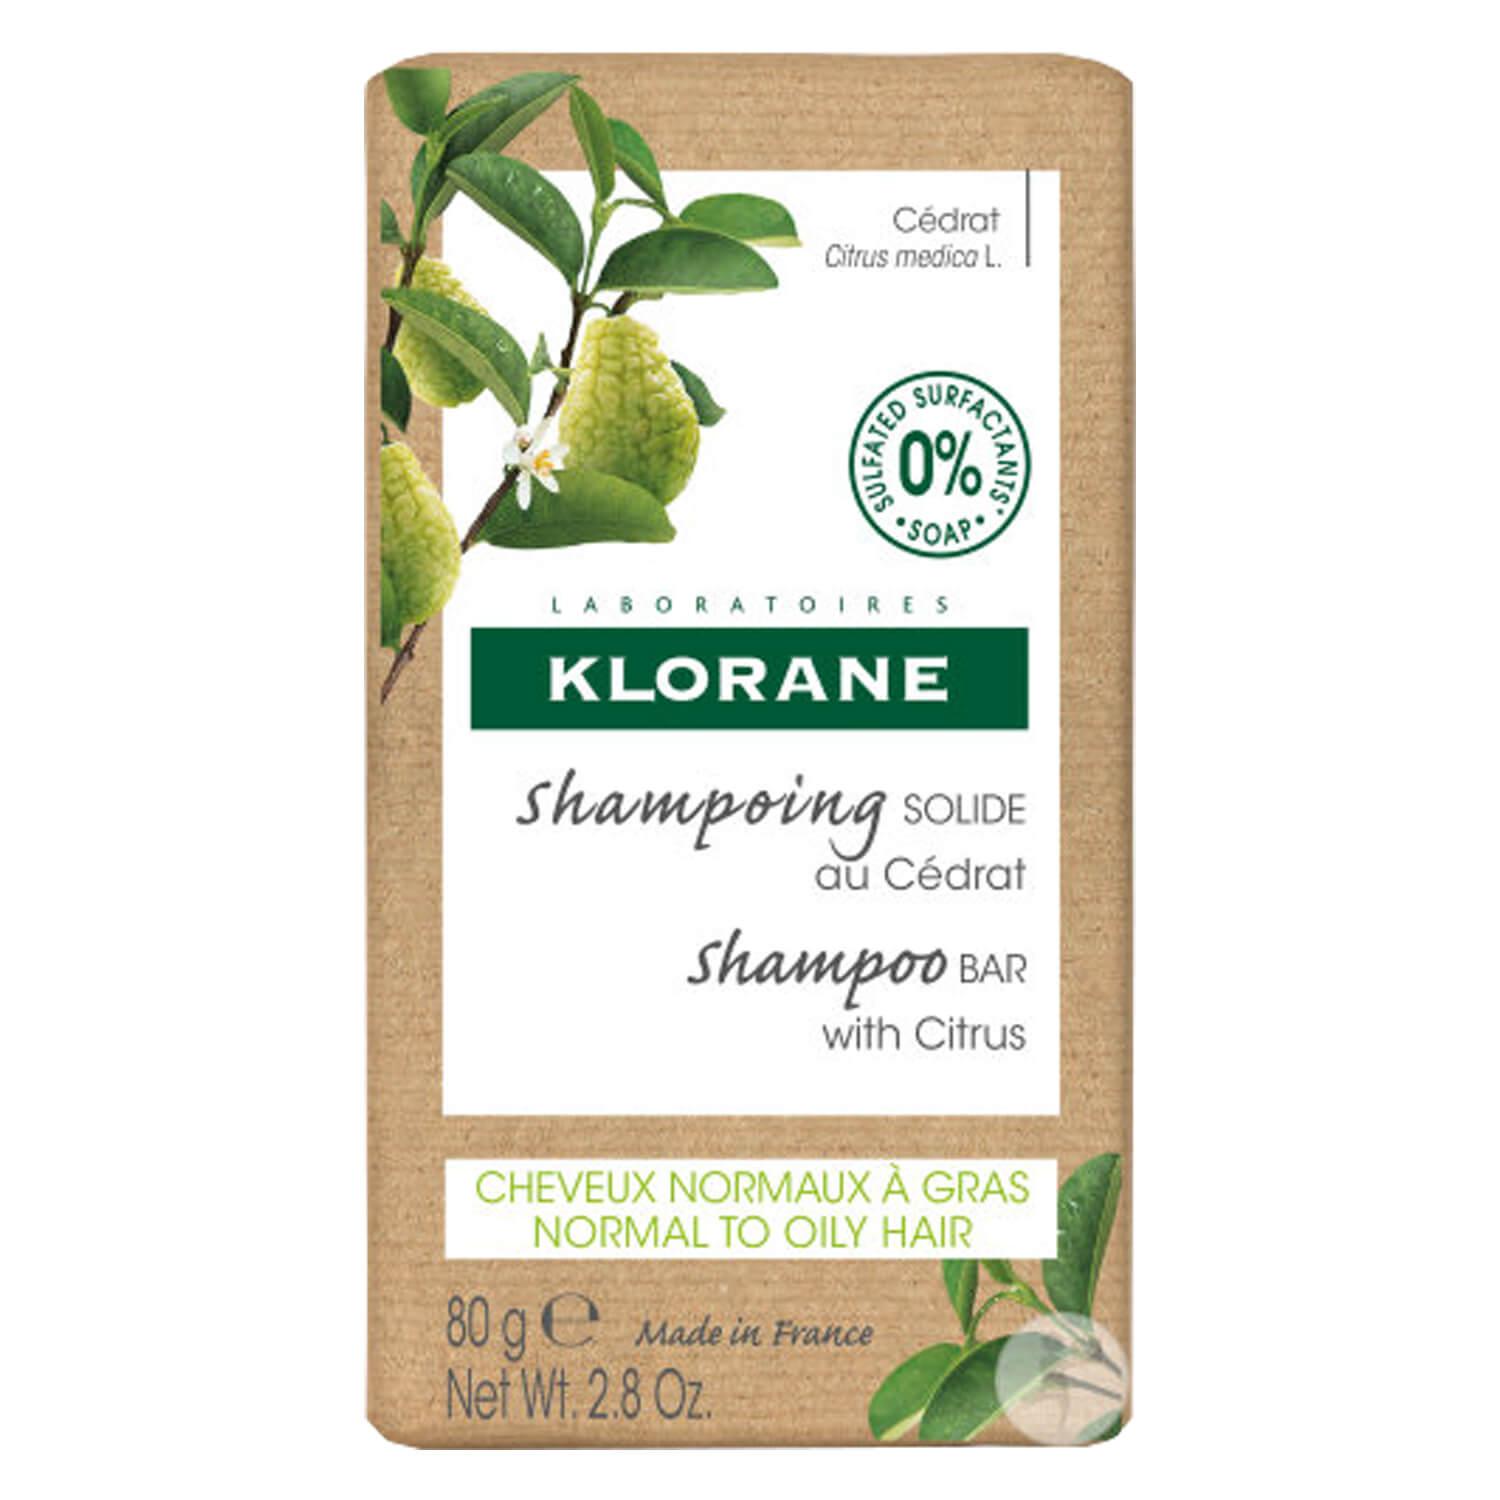 KLORANE Hair - Shampoo Bar with Citrus